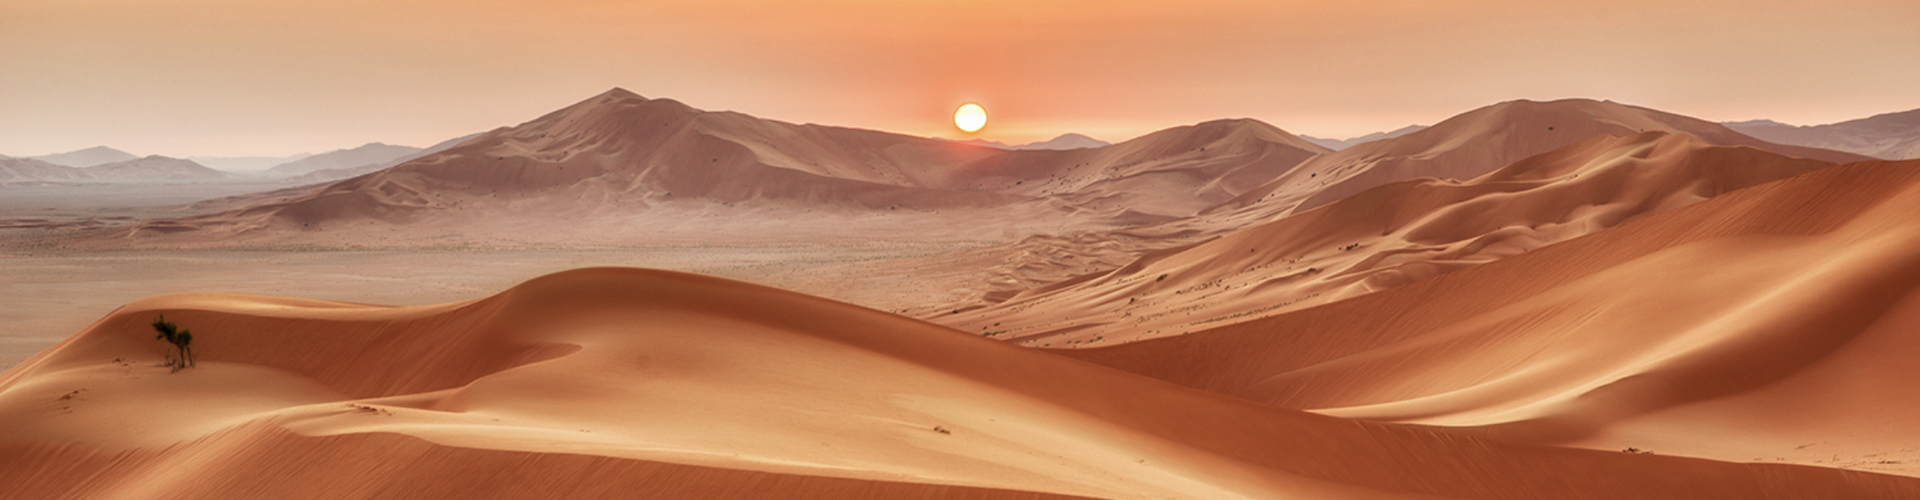 Oman del sud, lo spettacolo del deserto